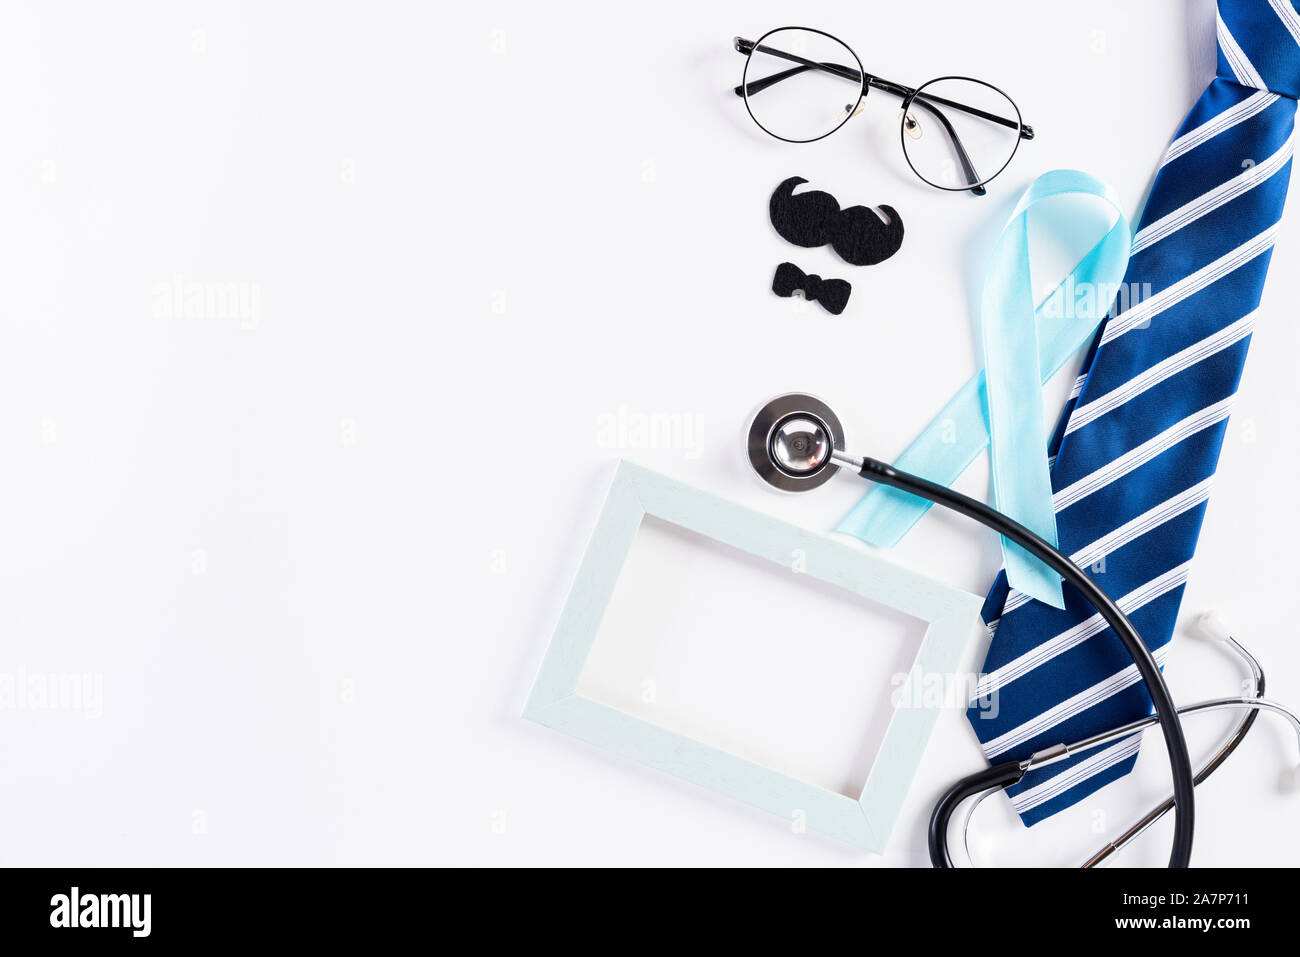 Nastro di colore blu con cravatta e uno stetoscopio su sfondo bianco che rappresenta un evento annuale durante il mese di novembre per aumentare la consapevolezza della salute dell'uomo Foto Stock